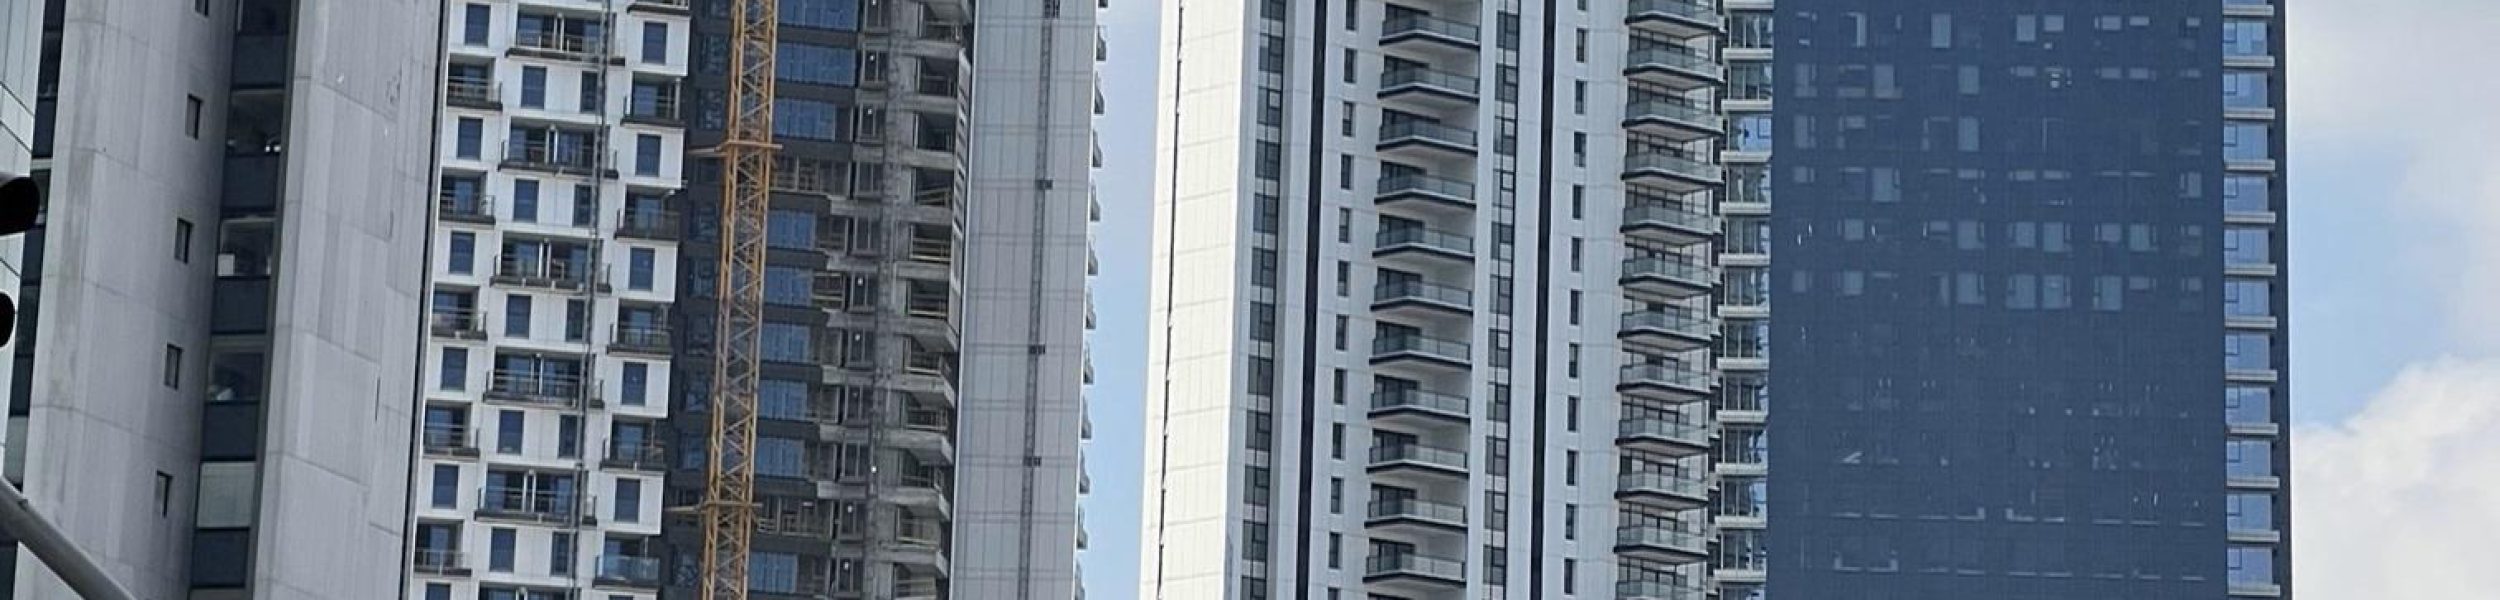 מגדלי דירות להשכרה בתל אביב. 20% מהדירות בשכר דירה מפוקח